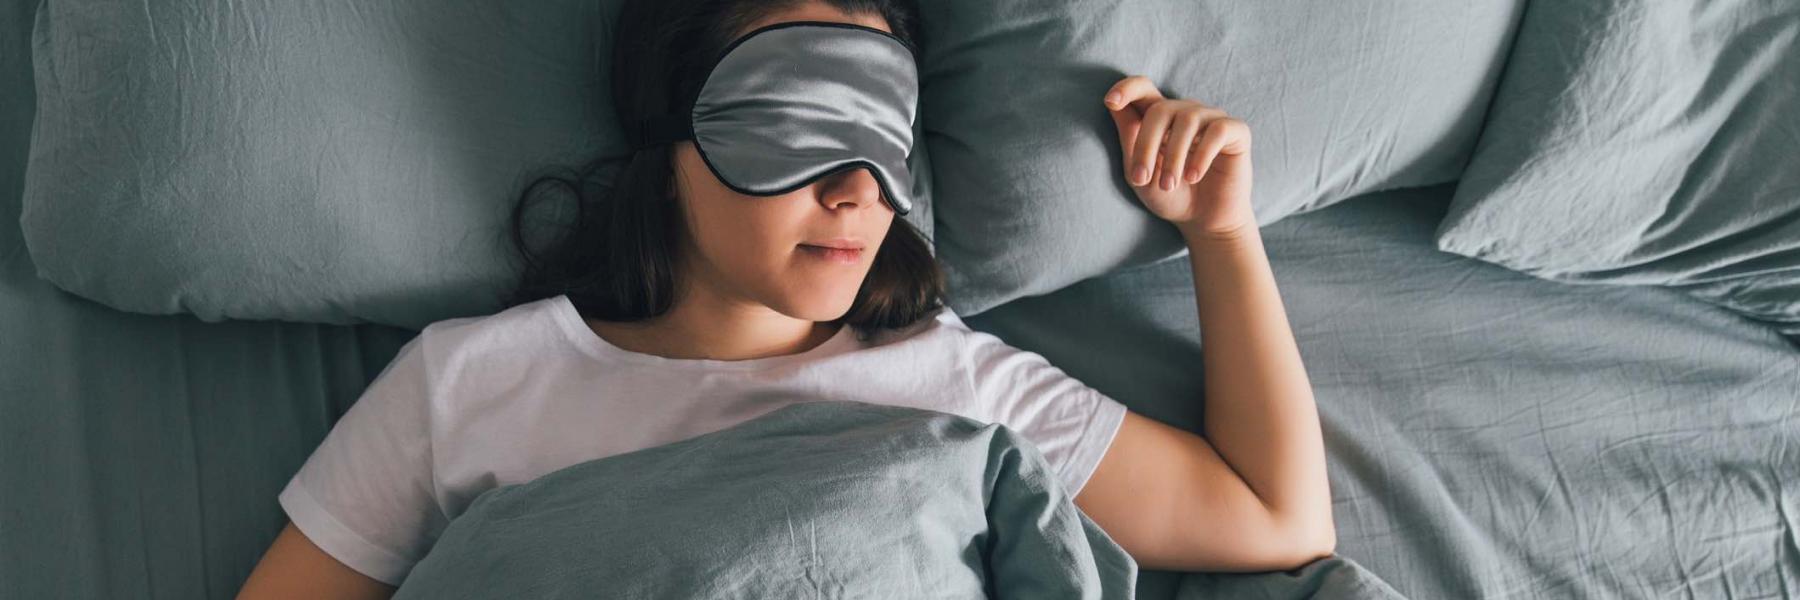 هل يؤدي النوم كثيرًا إلى الاكتئاب؟